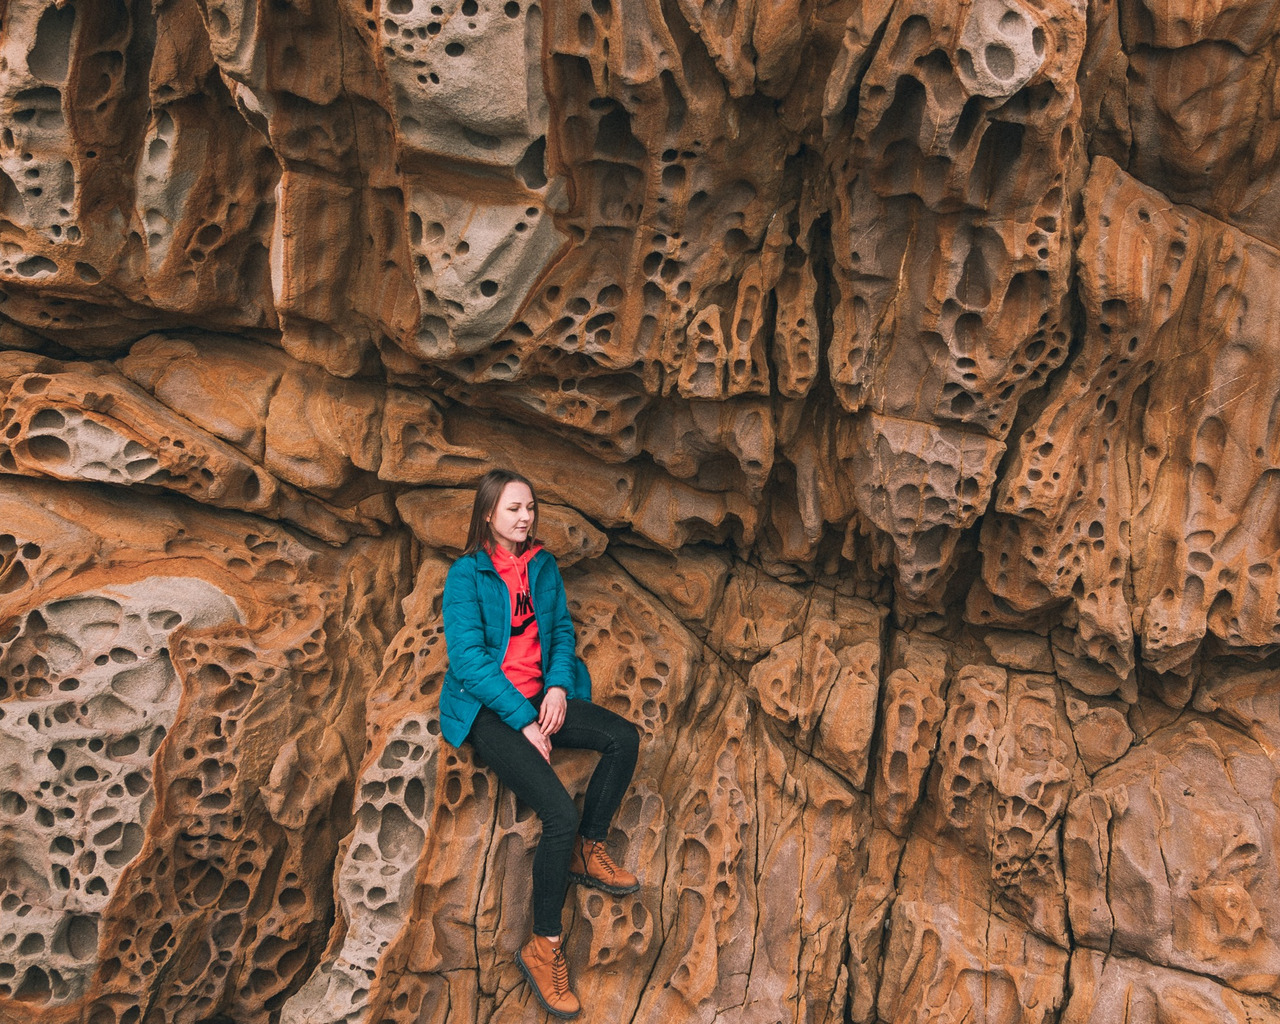 Это не декорация, а самая настоящая скала Тузлух, известная, как Сырная. Большая Алушта, недалеко от поселка Малореченский